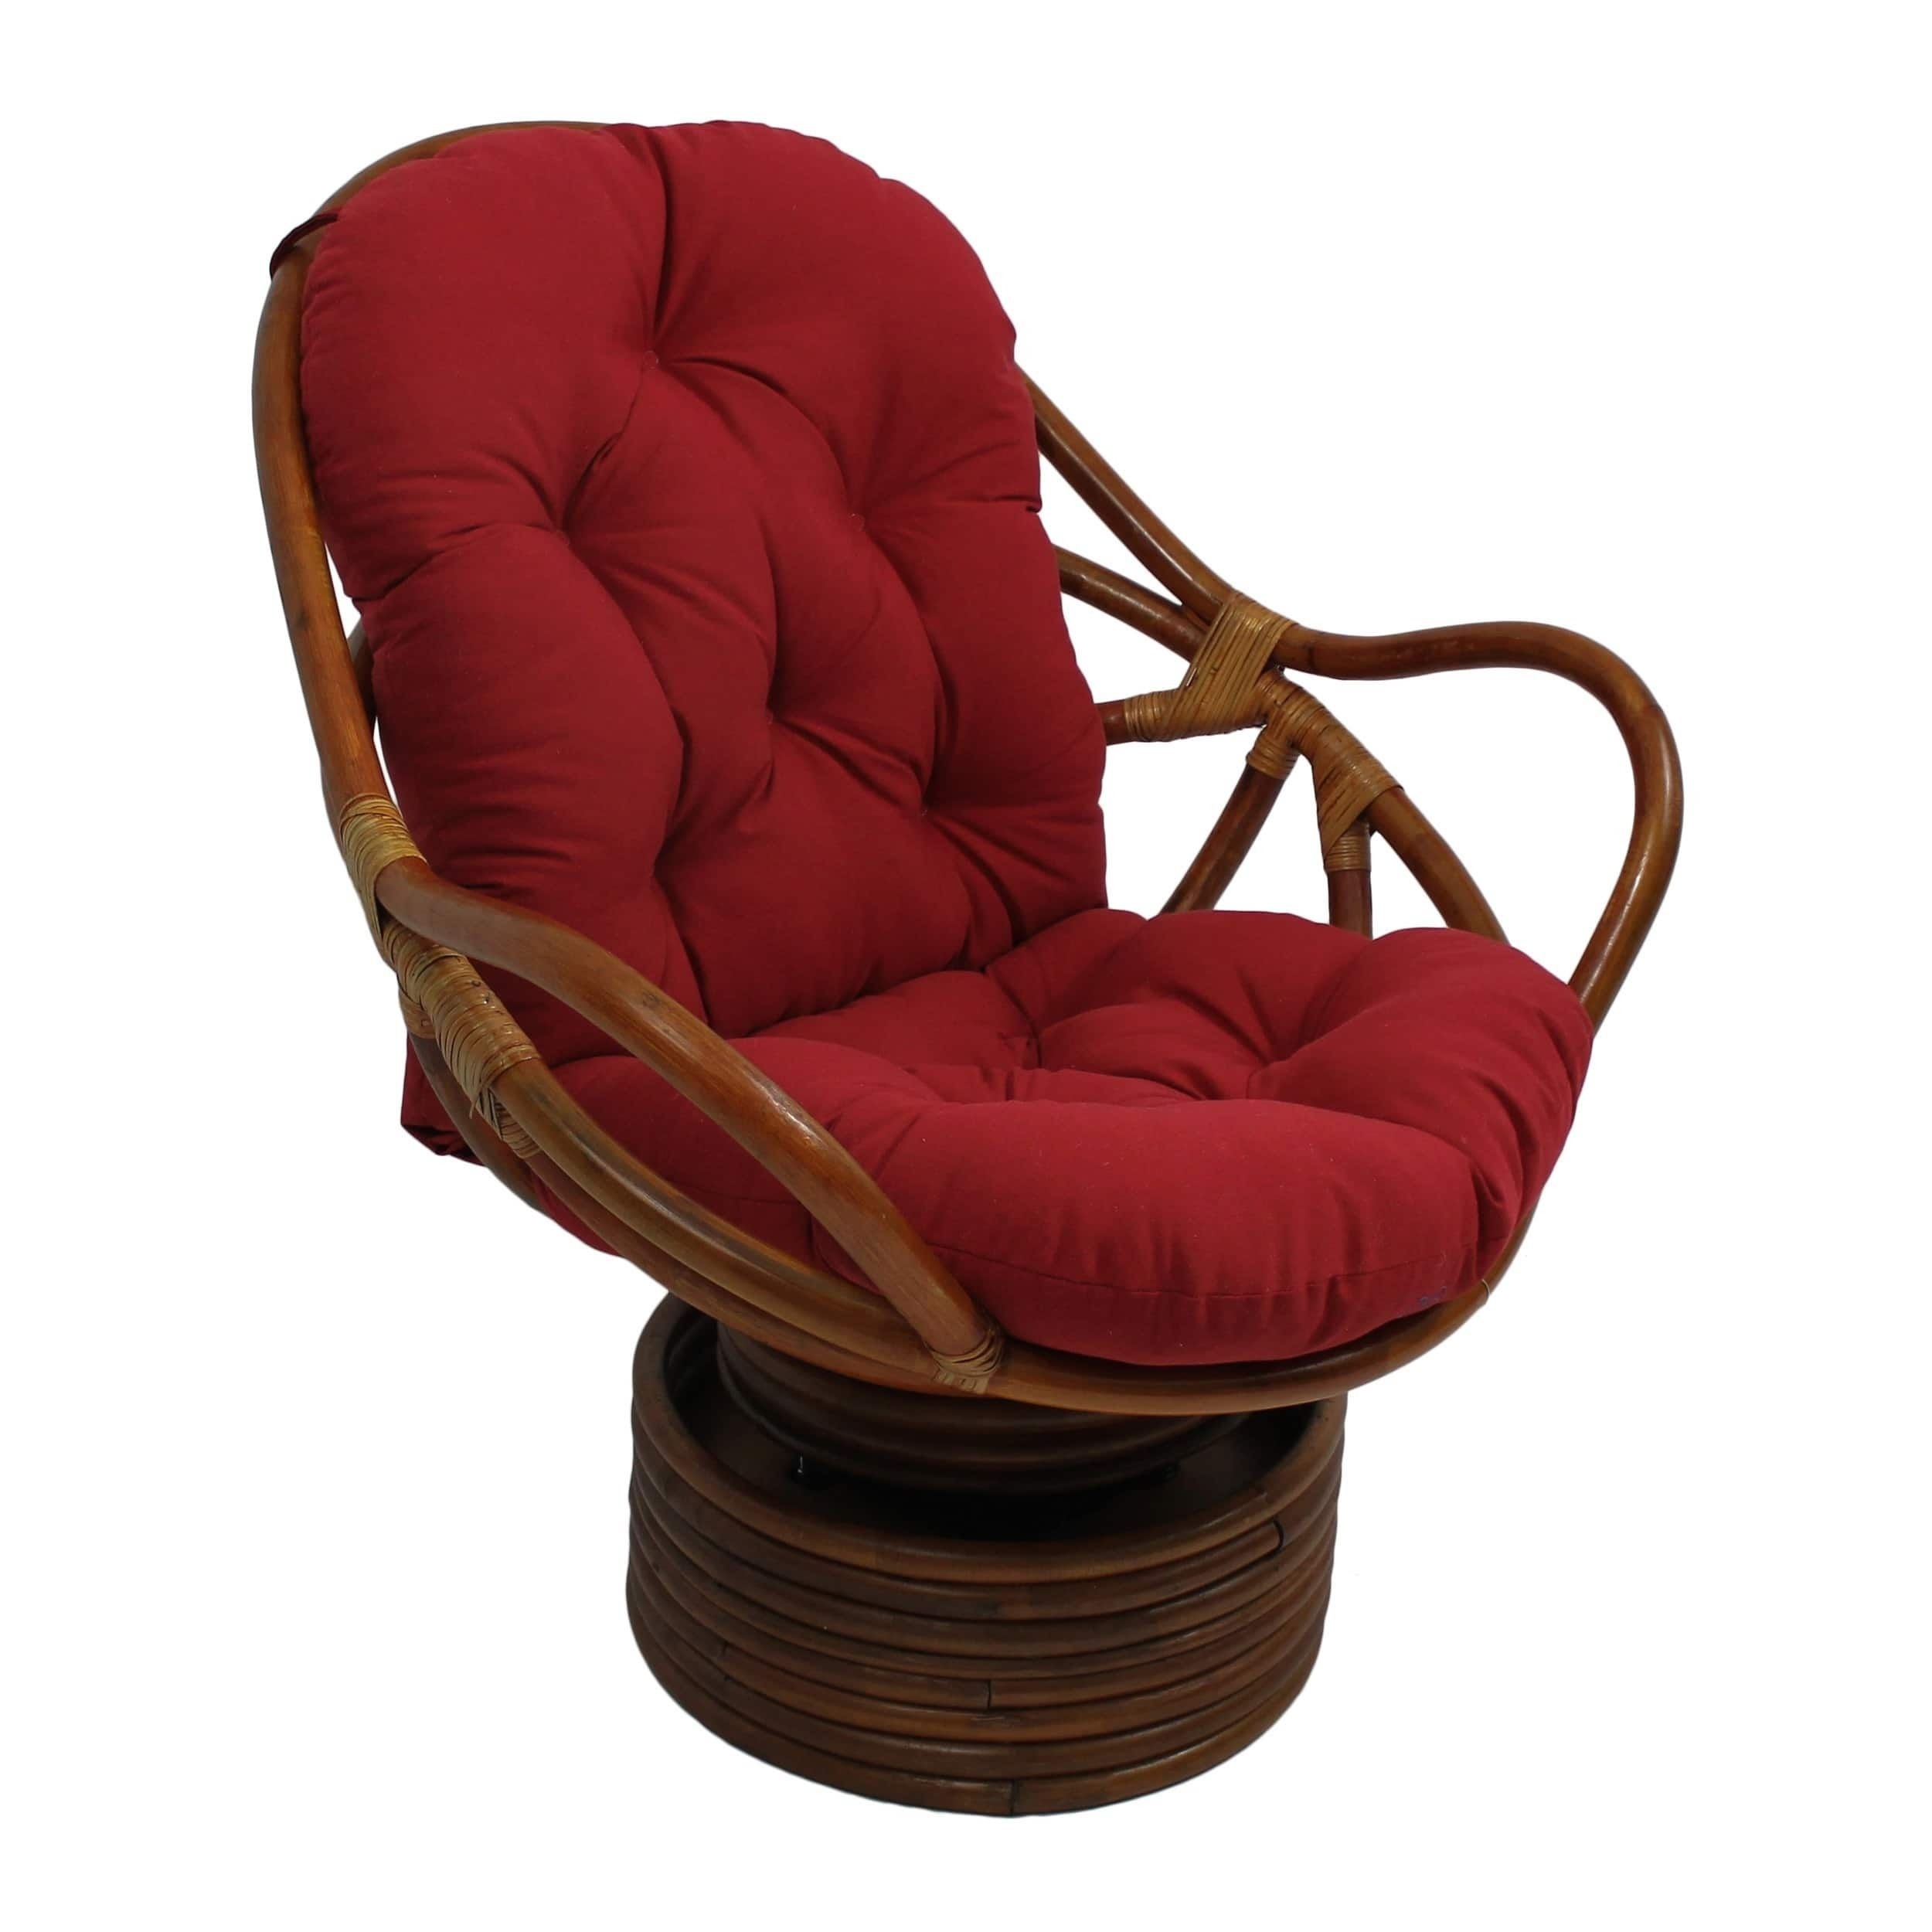 Papasan rocker chair cushion